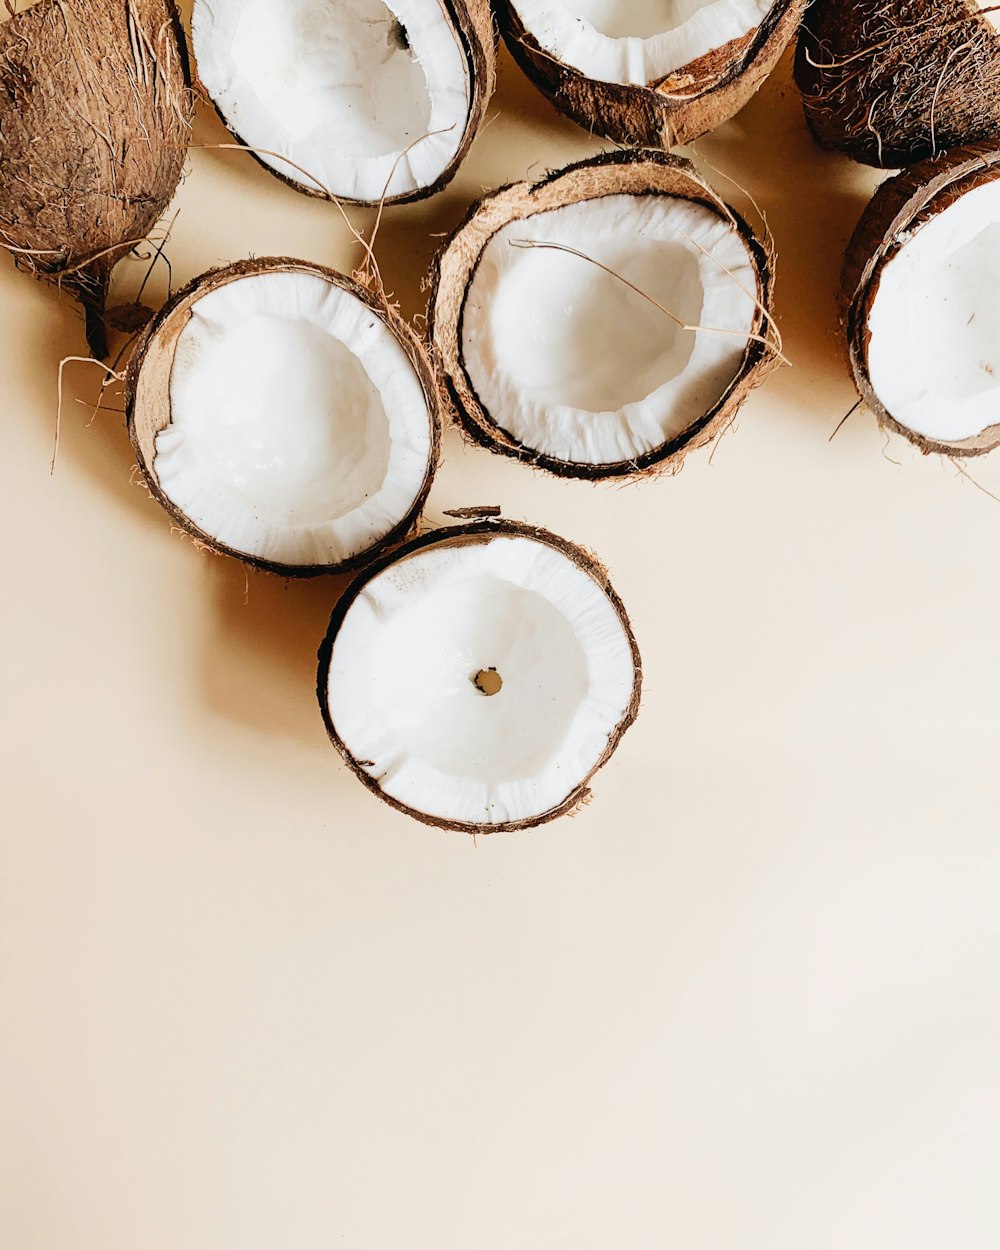 Kokosnüsse auf weißer Oberfläche